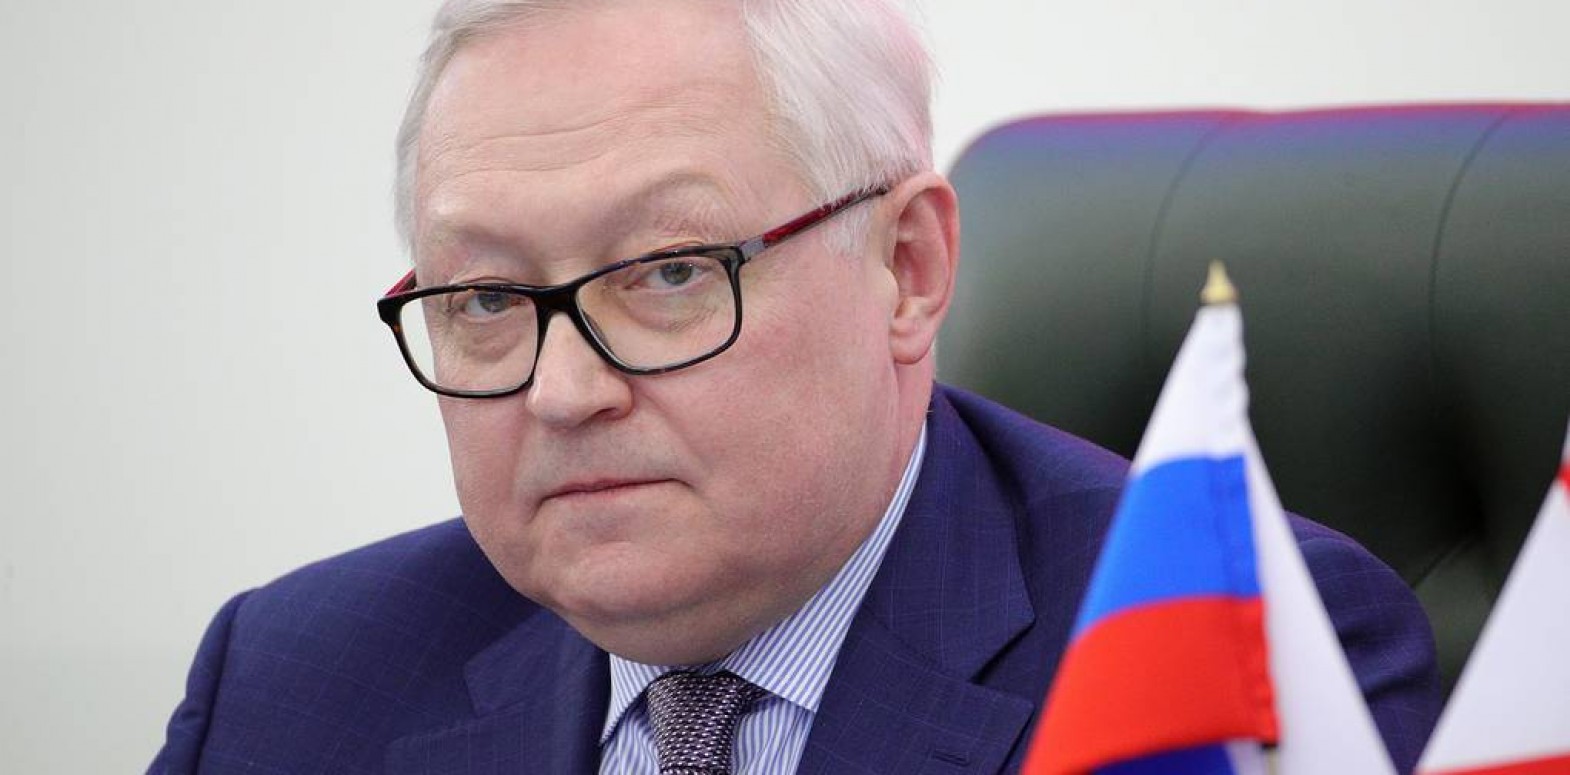 ماحقيقة تصريح نائب وزير الخارجية الروسية بأن روسيا ستنسحب من سوريا بسبب ضعف الدولة وفساد المؤسسات؟